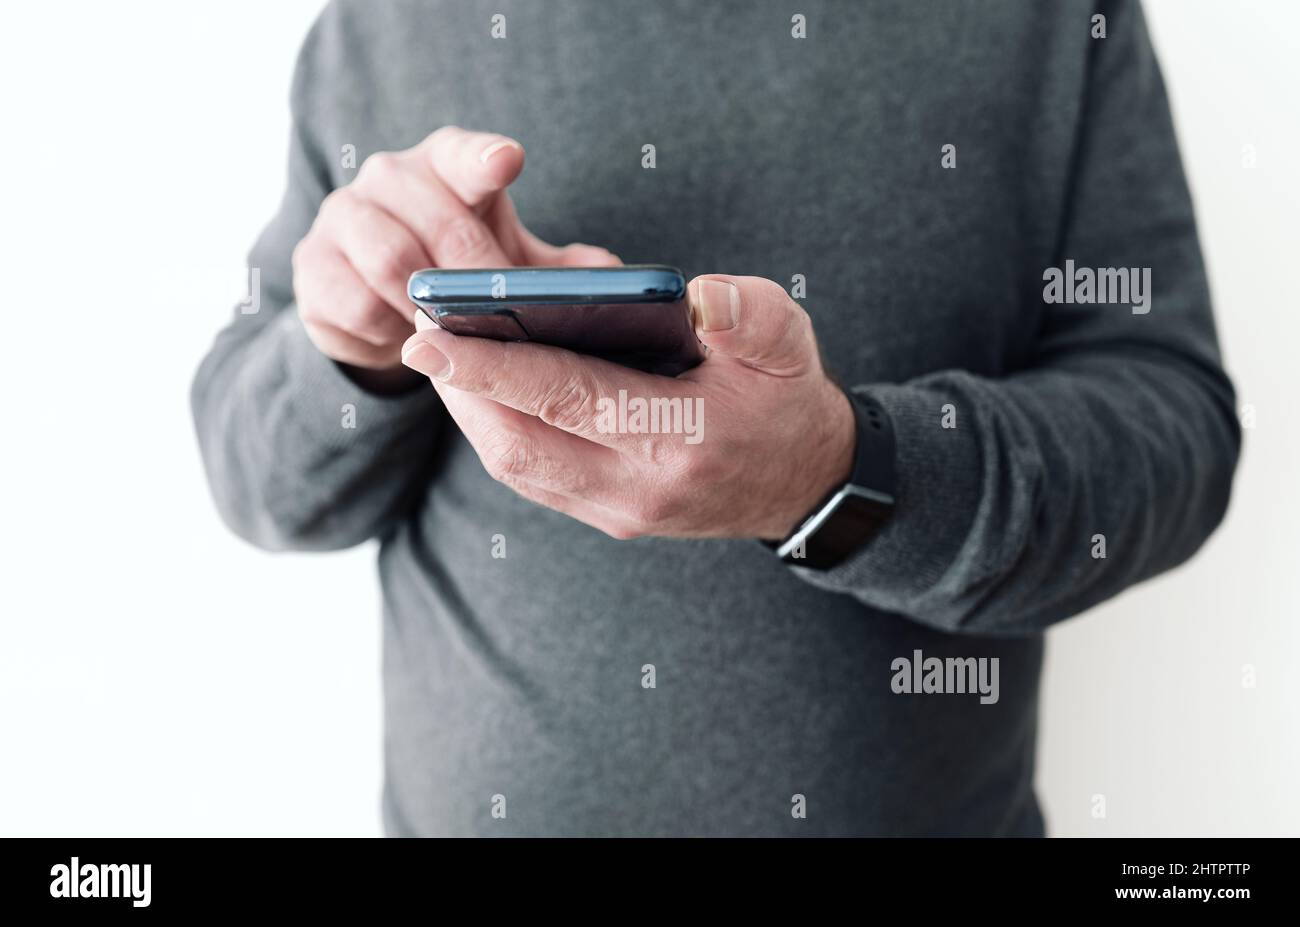 Mittelteil eines Mannes, der das Smartphone in der Hand vor einer weißen Wand hält Stockfoto